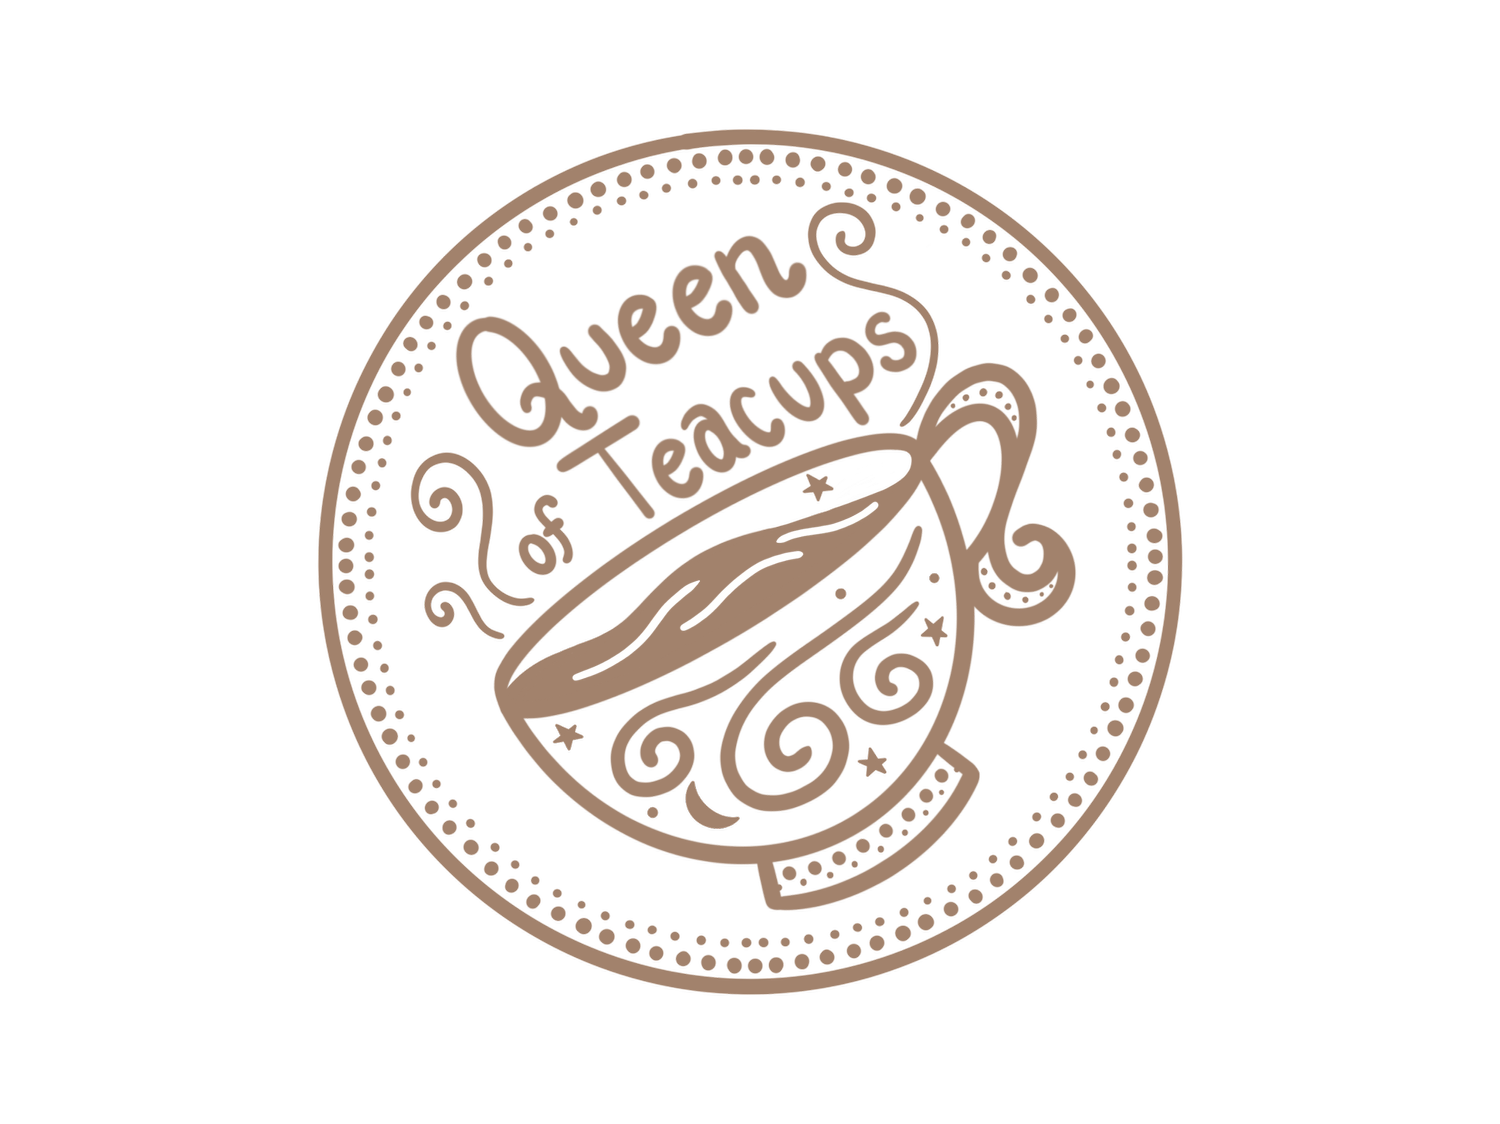 Queen of Teacups